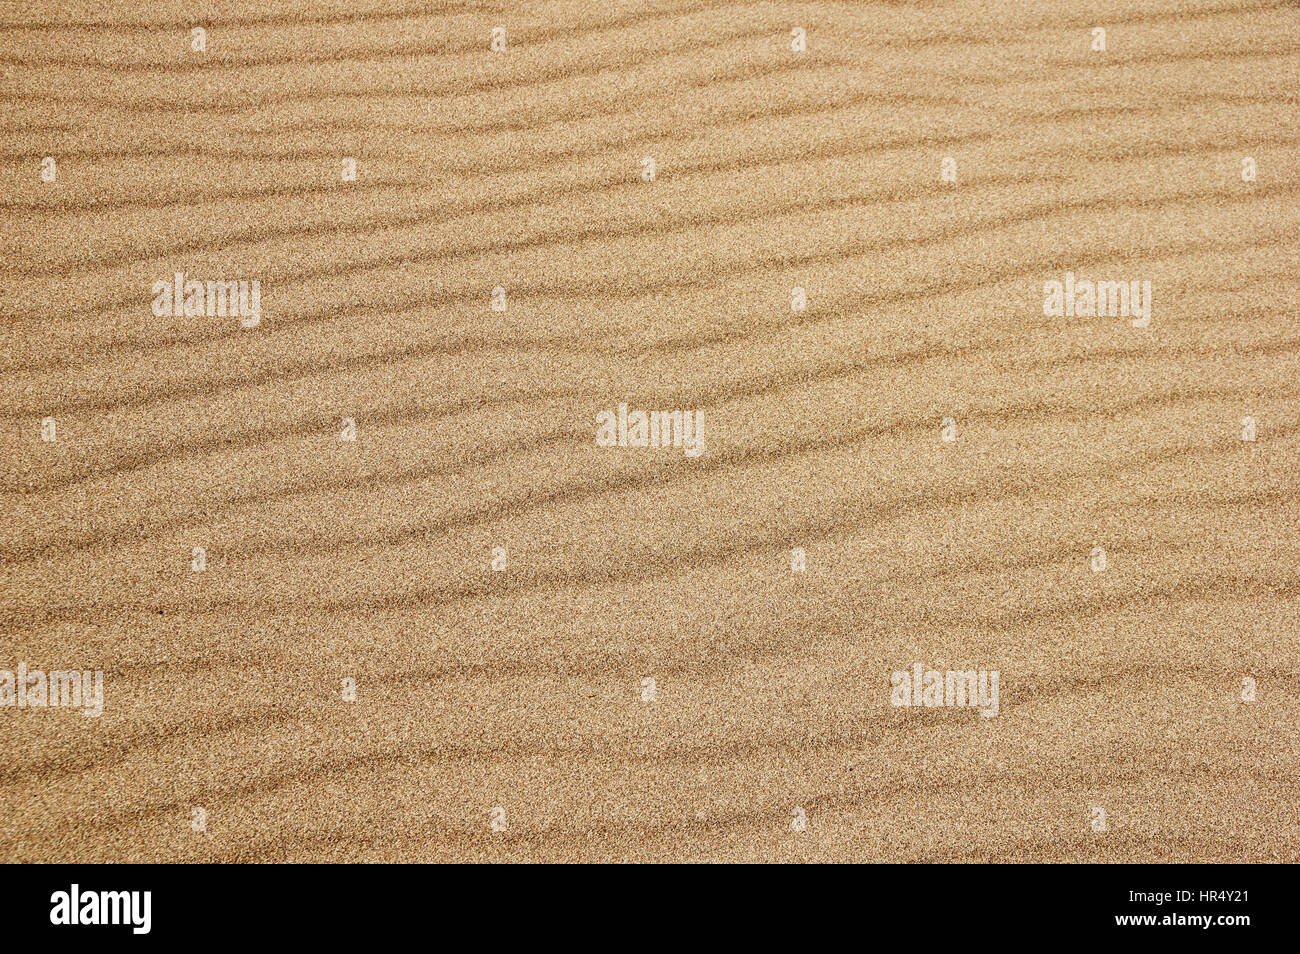 Détail de la surface du sable ondulée au Great Sand Dunes National Park Banque D'Images